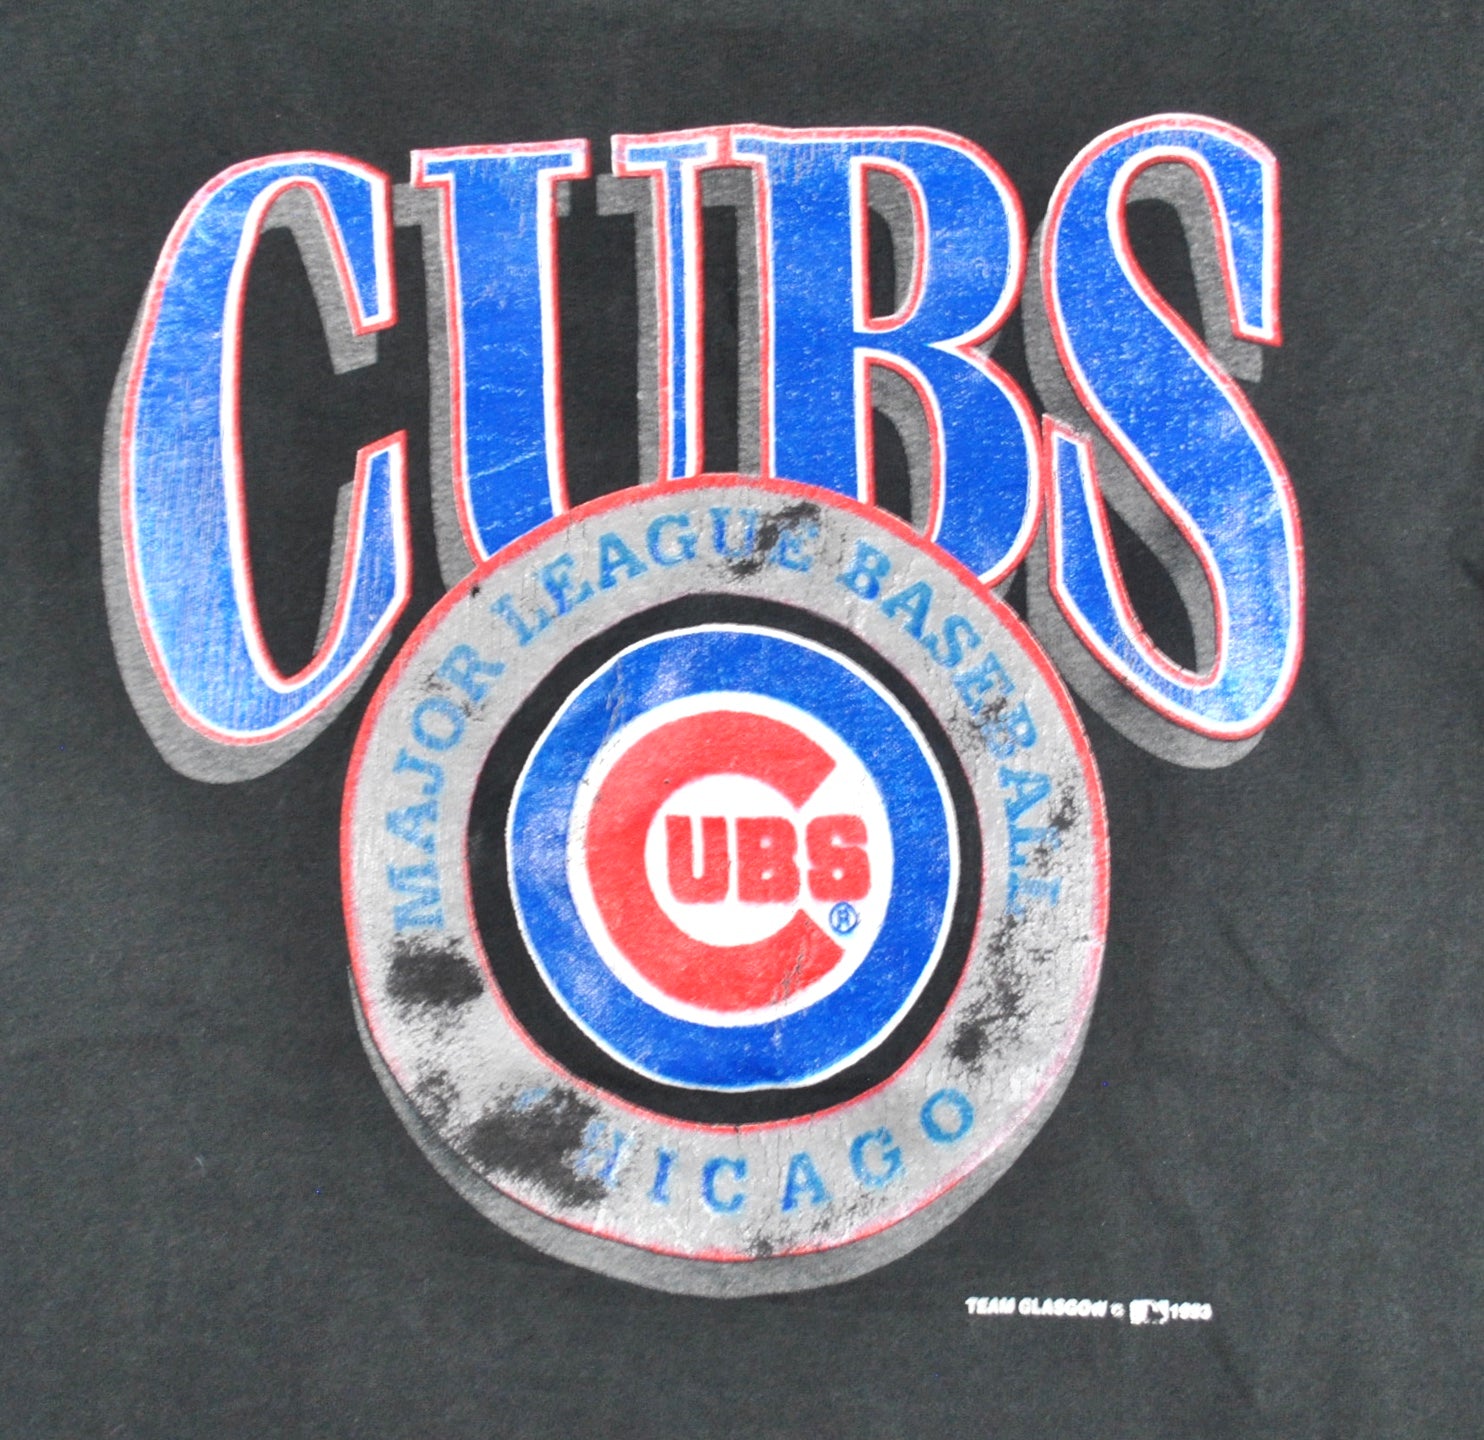 Chicago Cubs Vintage in Chicago Cubs Team Shop 